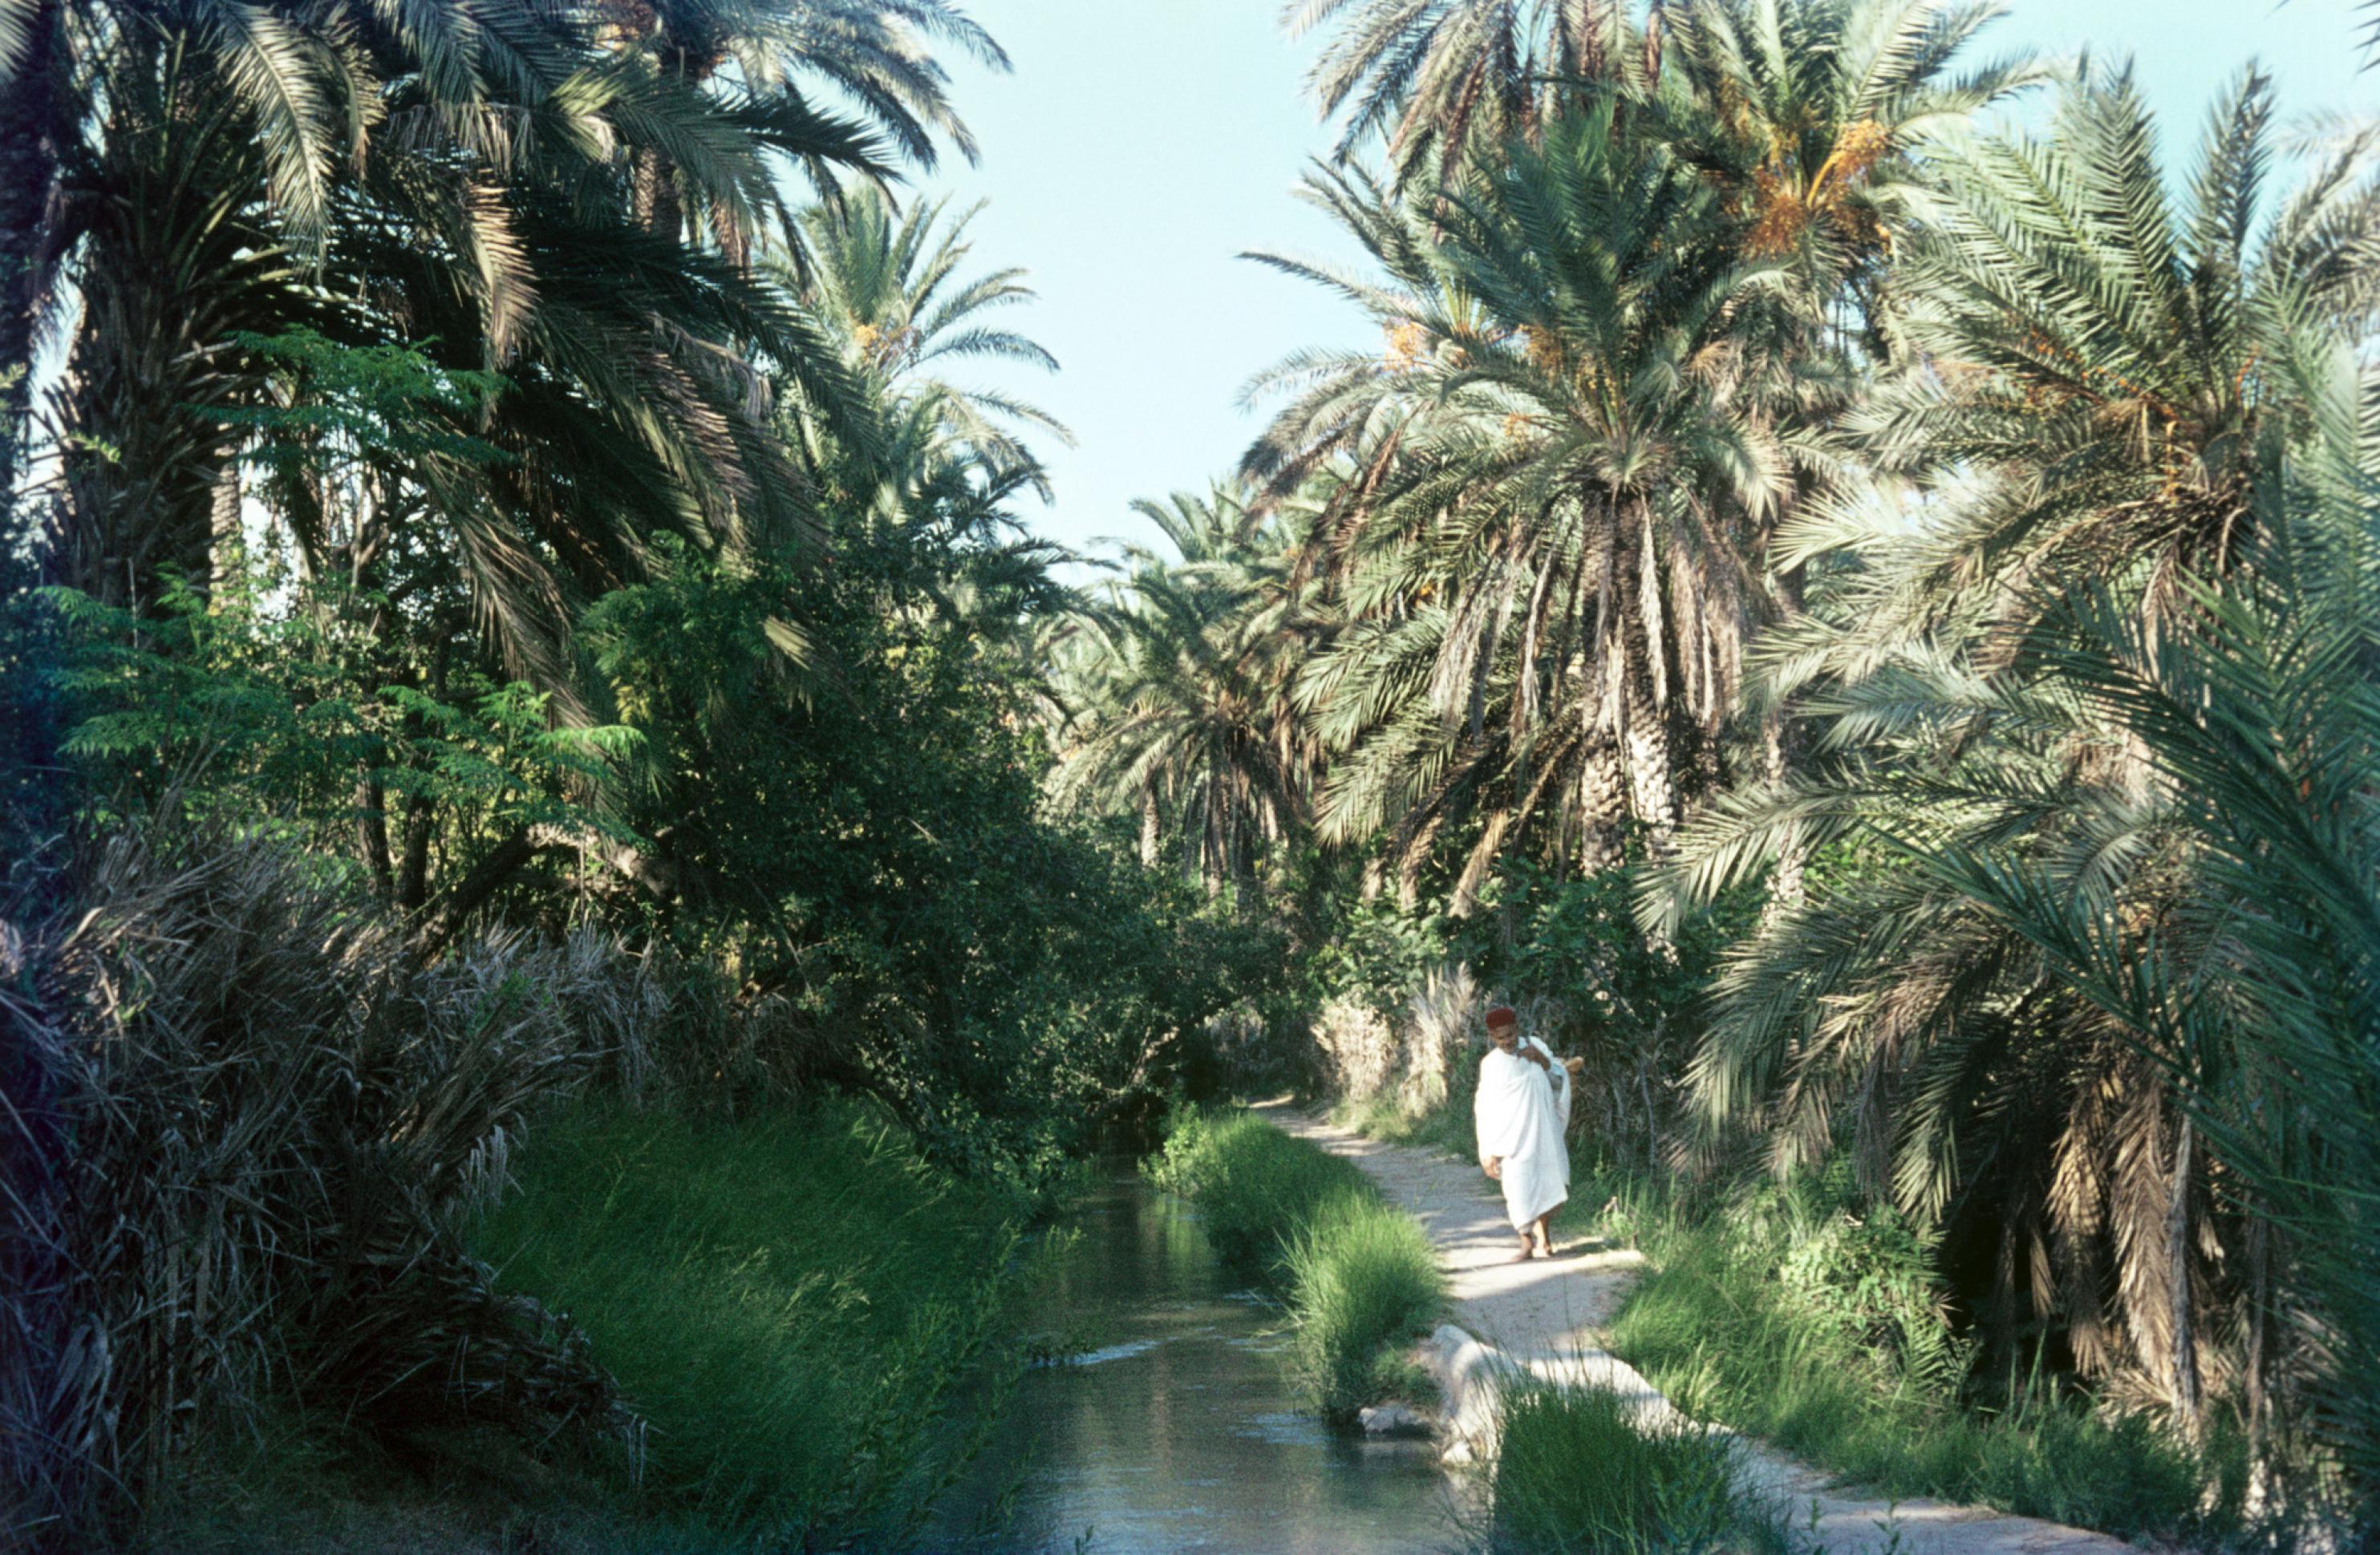 Ein Mann in traditioneller Kleidung geht am Rande eines Wasserlaufs durch eine grüne Oase